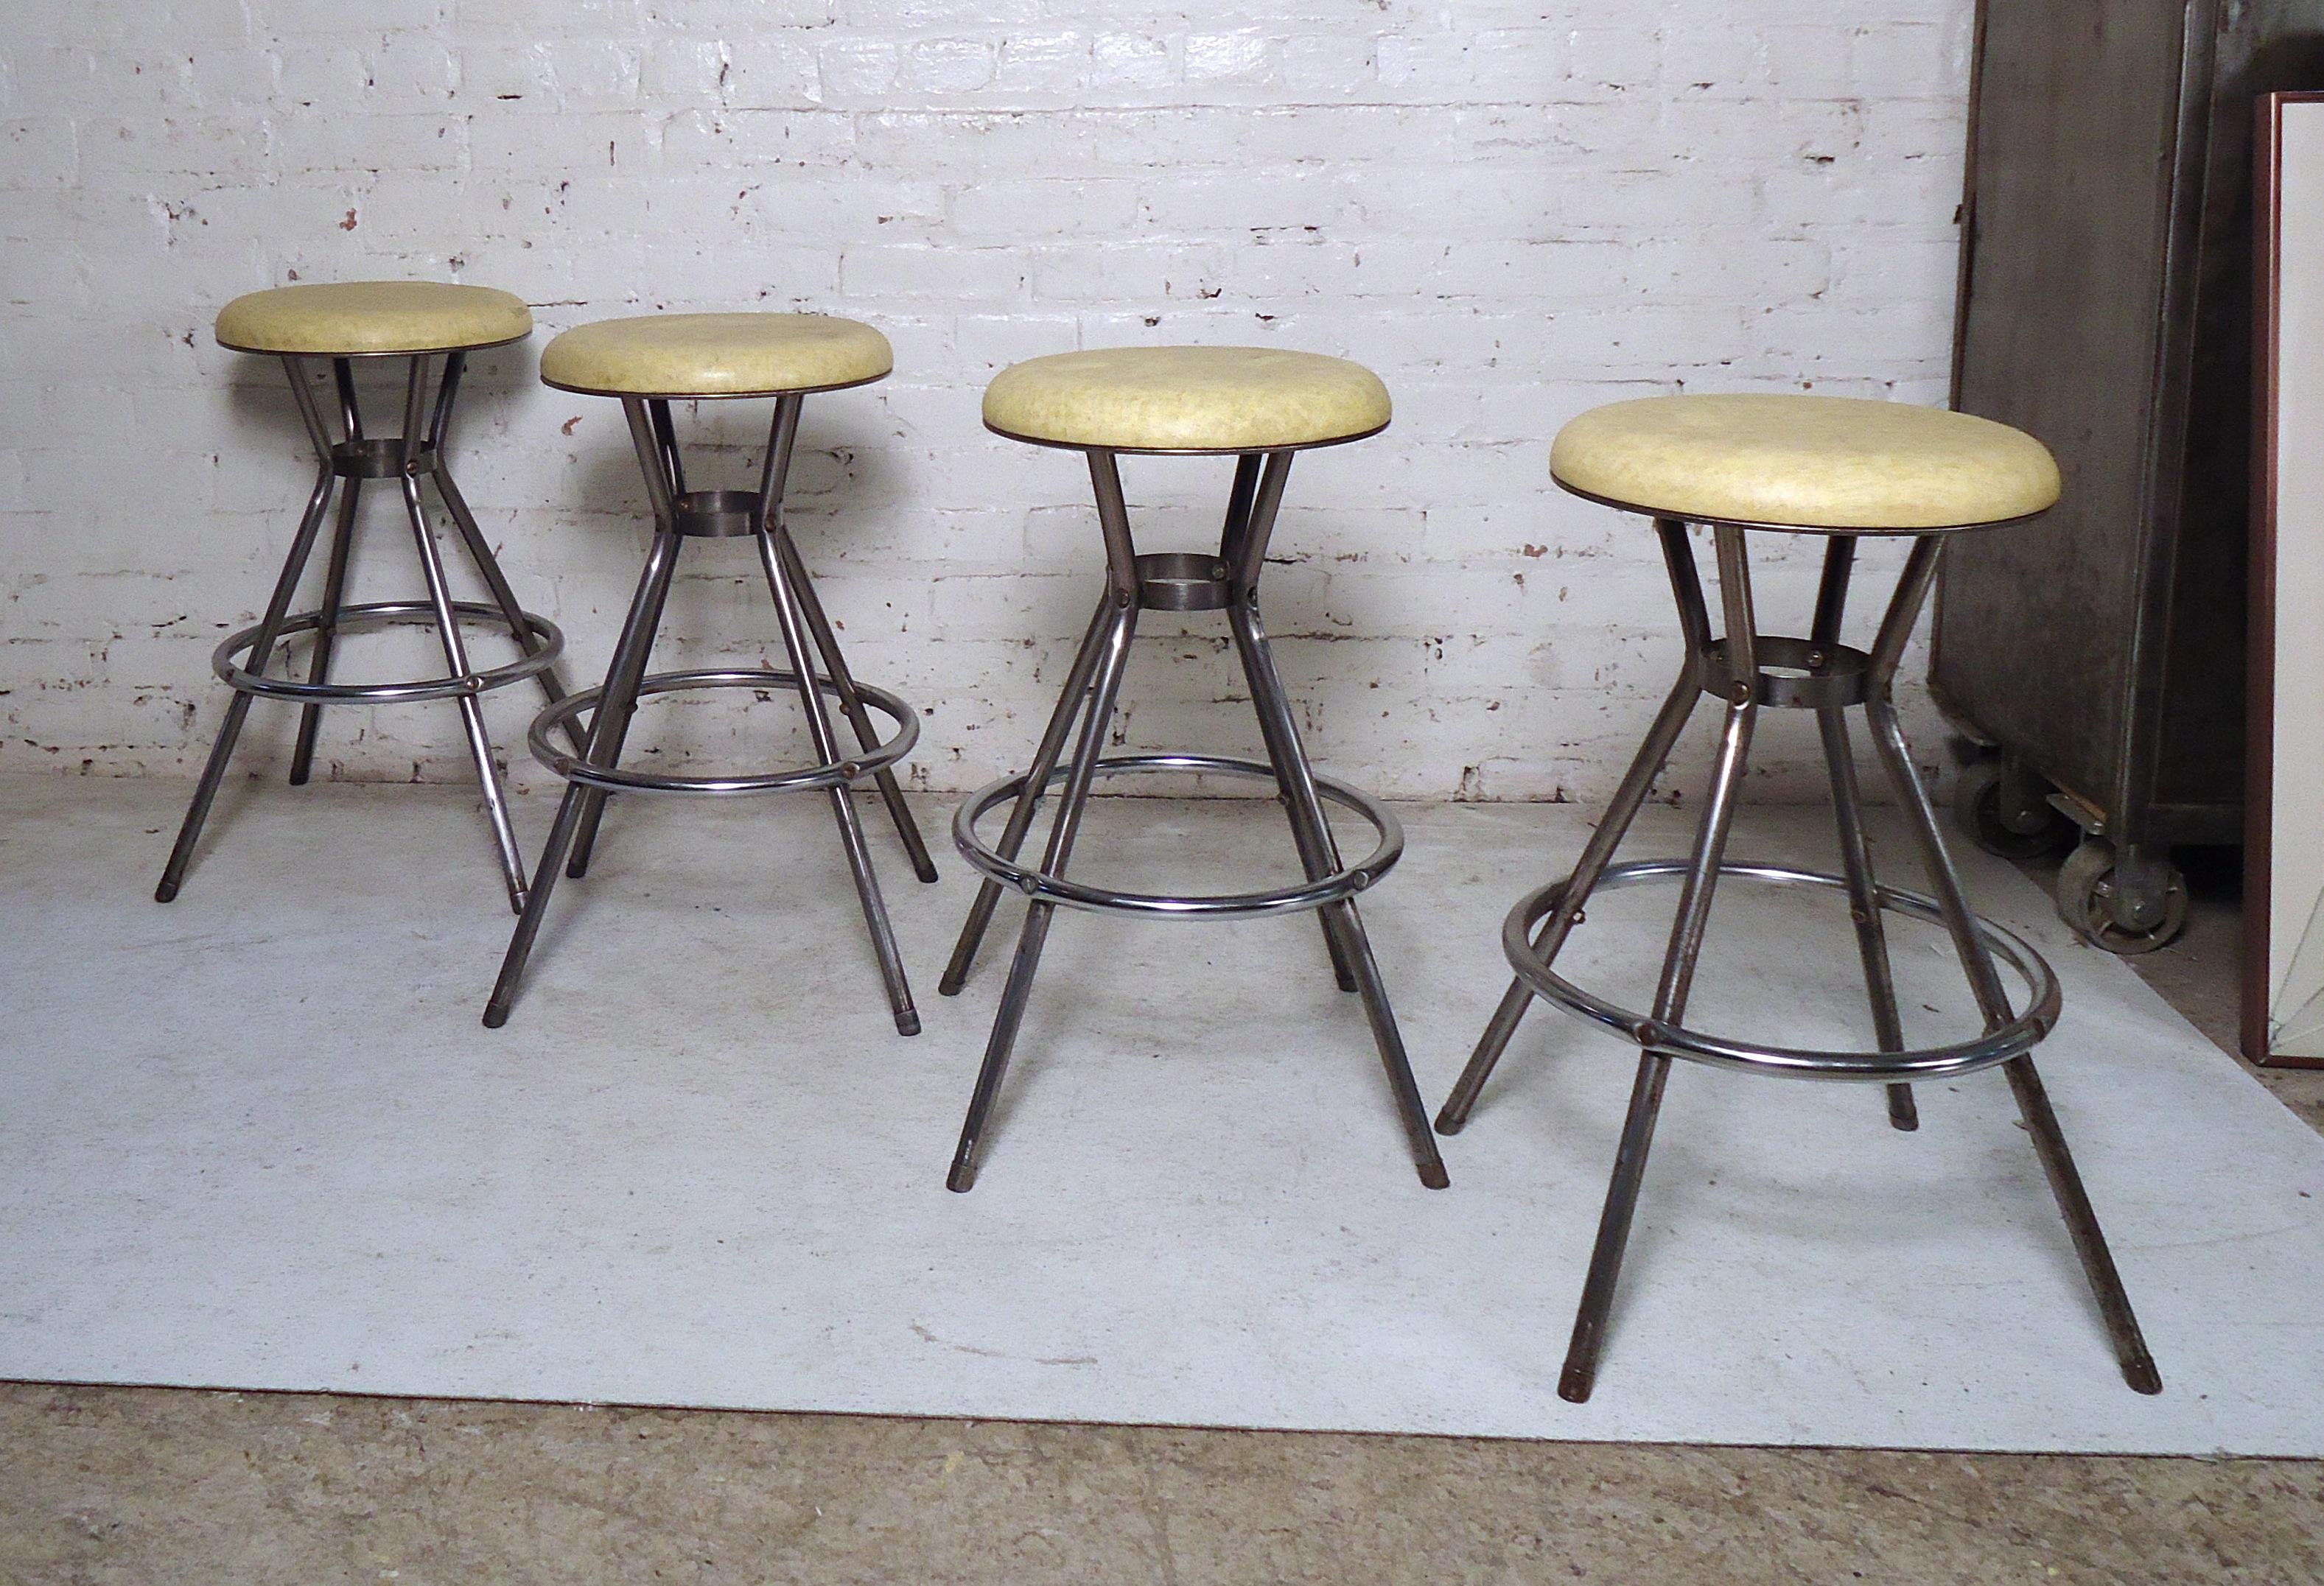 Ensemble de quatre tabourets en métal industriel vintage par Cosco, ces sièges feraient un excellent ajout à toute maison.
Veuillez confirmer la localisation de l'article (NY ou NJ).